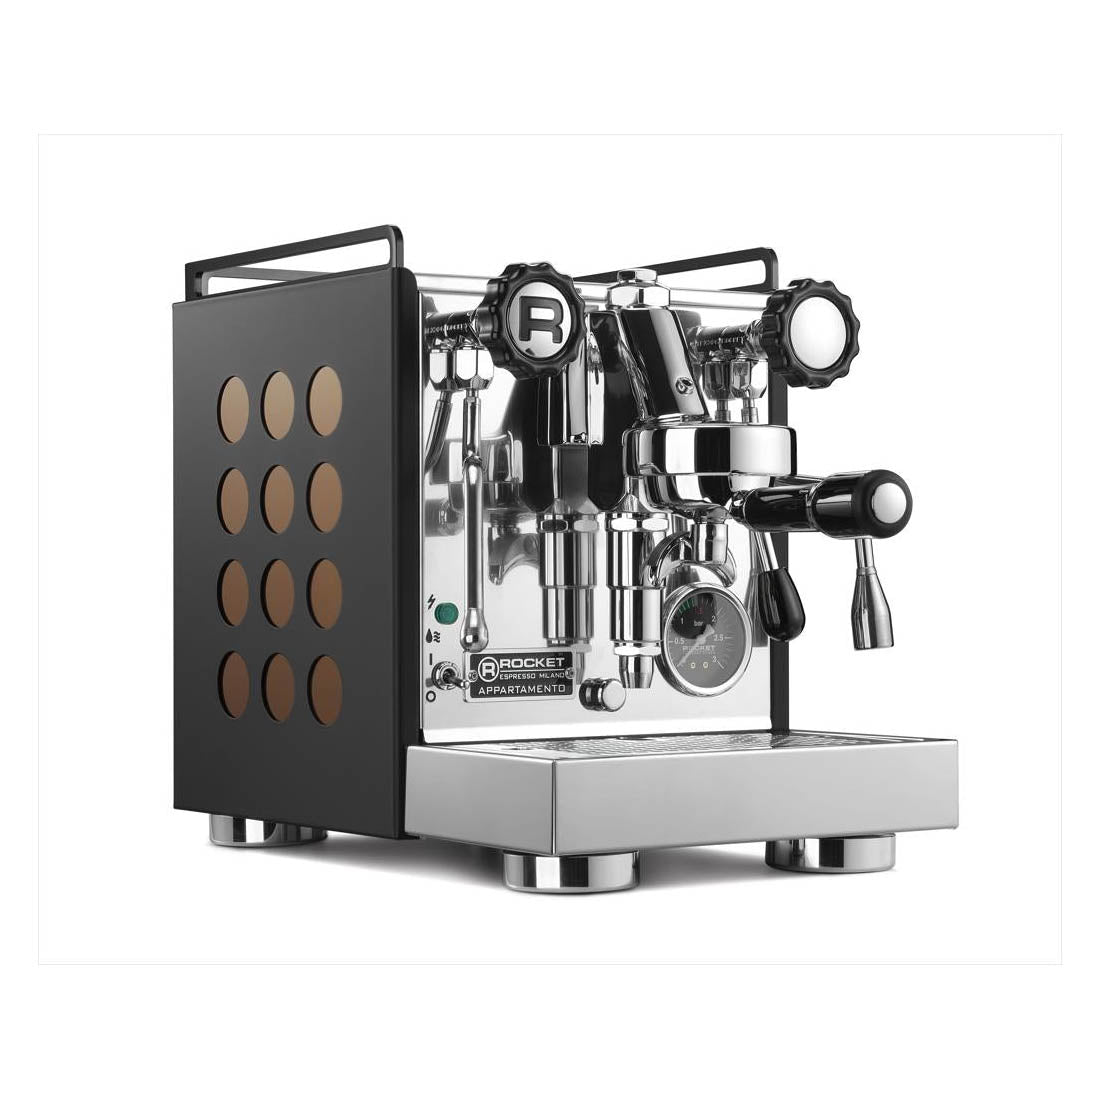 Appartamento Espresso machine